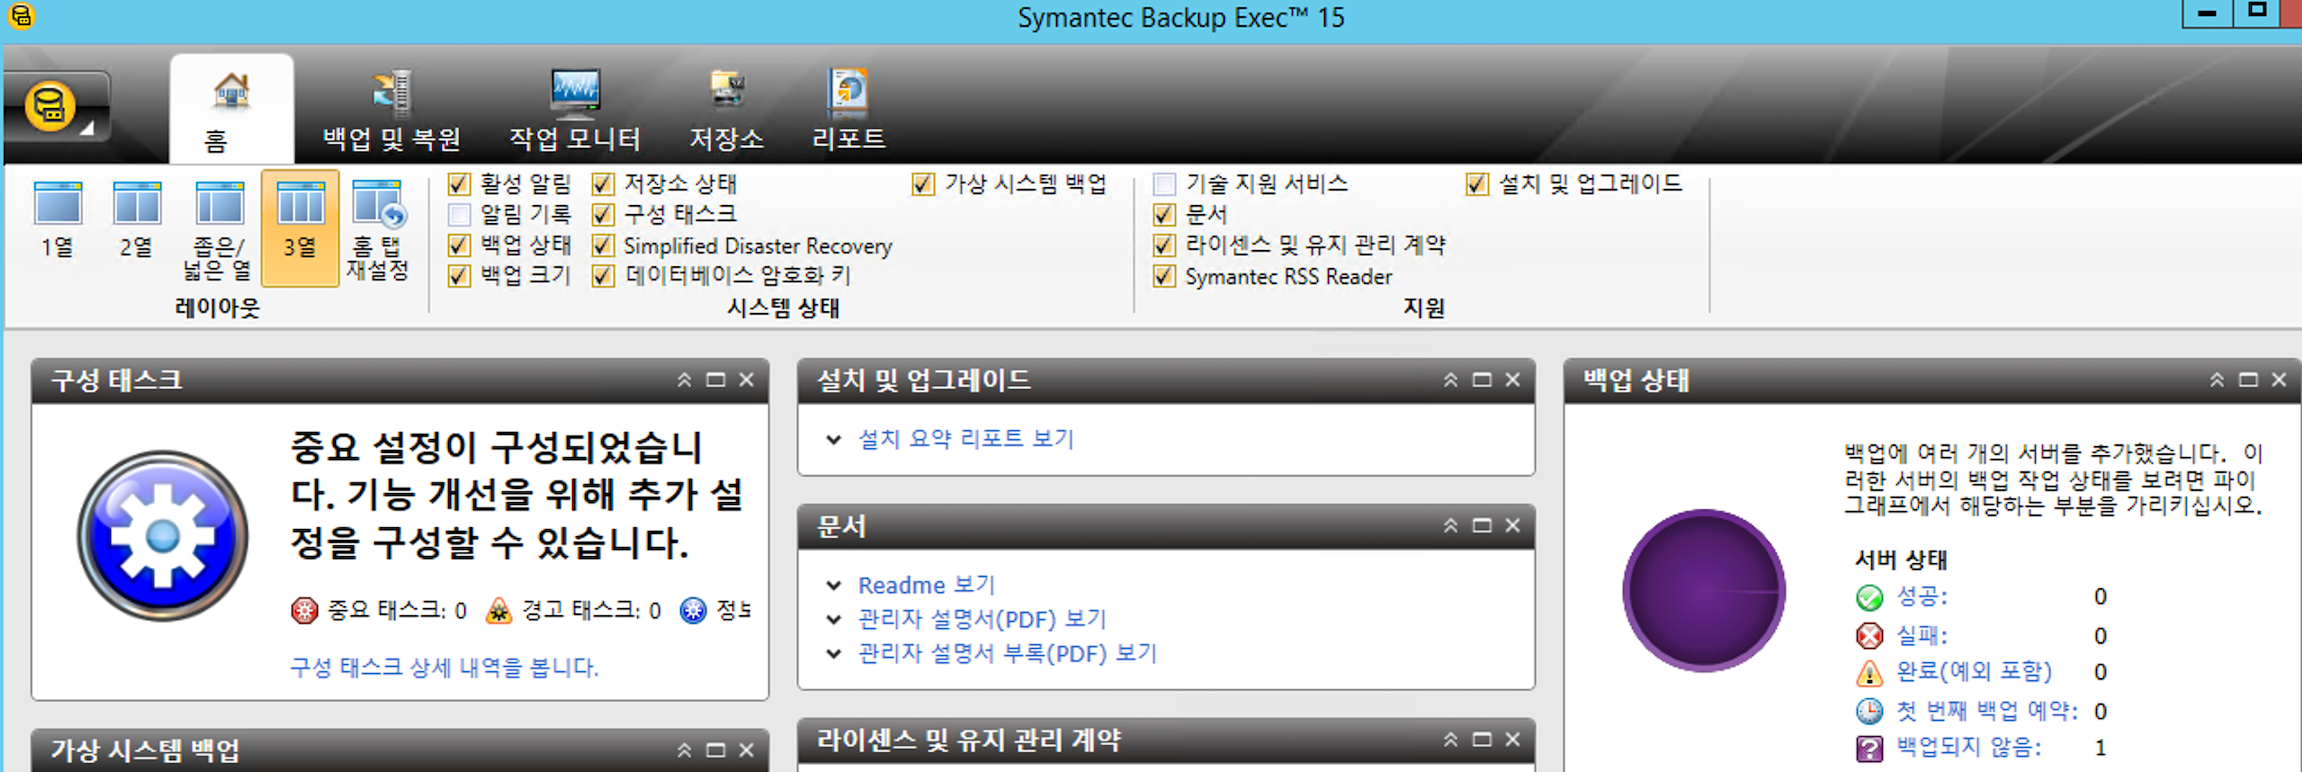 Symantec backup exec